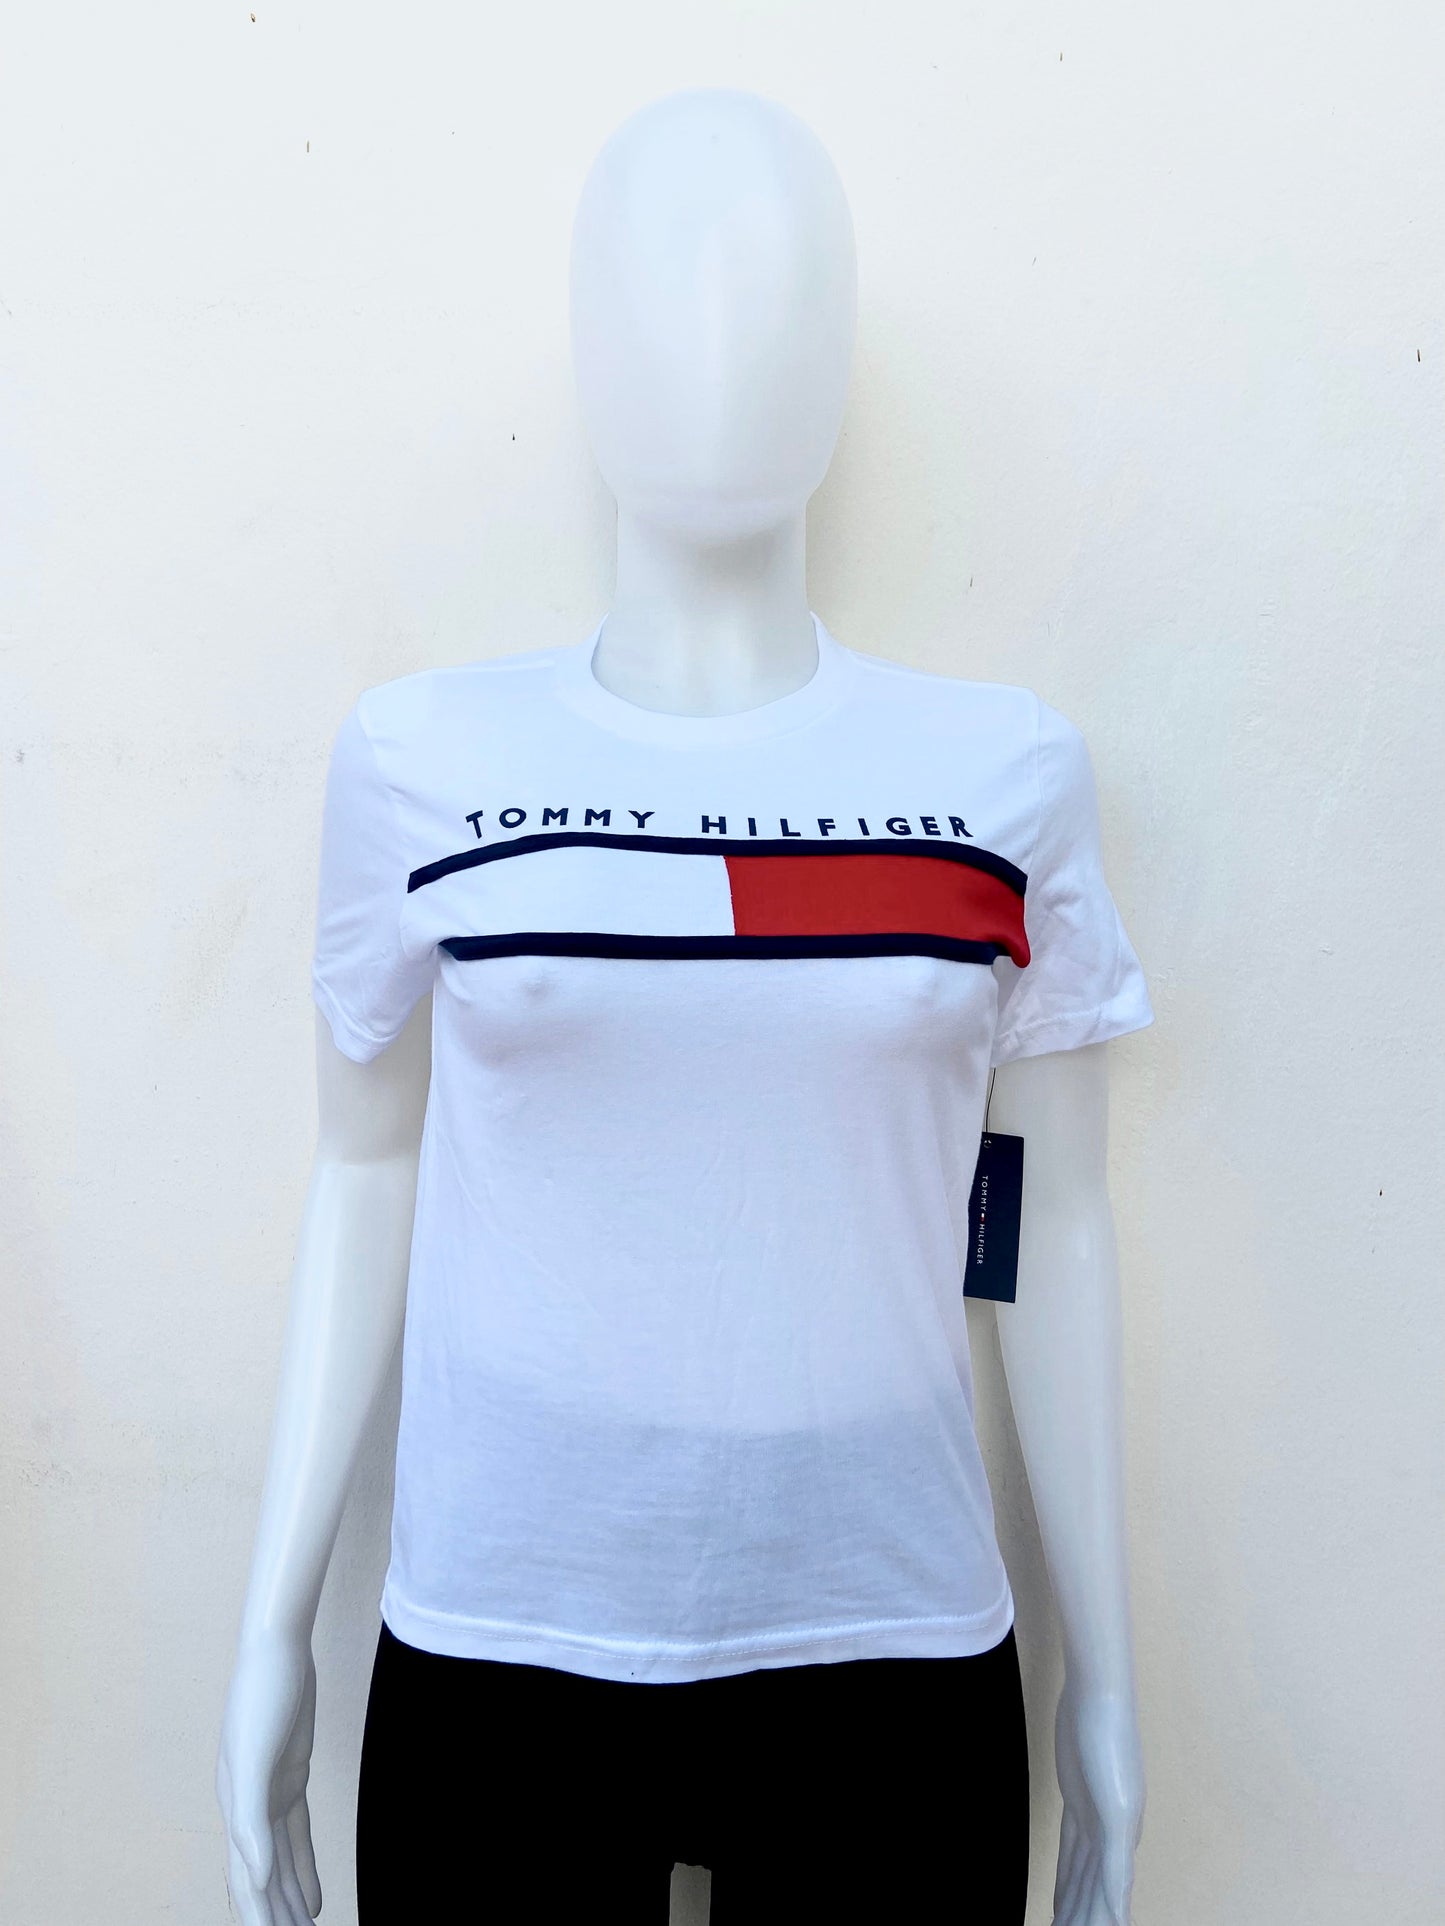 T-shirt Tommy Hilfiger original blanco con bandera Tommy en frente y letras más pequeñas TOMMY HILFIGER en frente, nuevo.